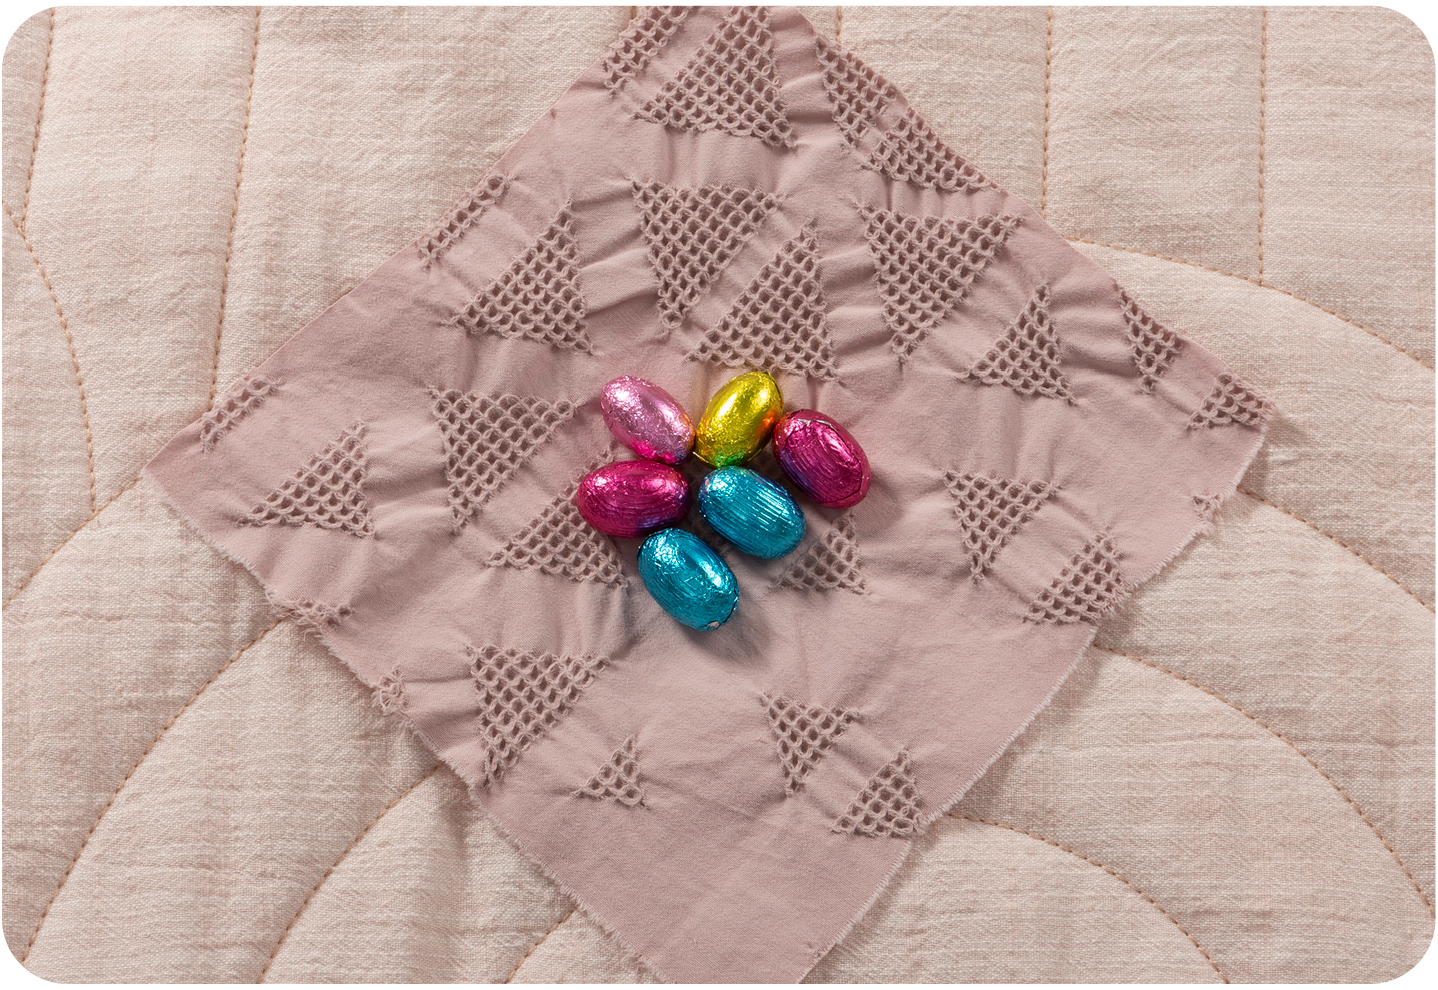 Des œufs en chocolat dans des emballages aux couleurs pastel vives au centre d'un losange de tissu.